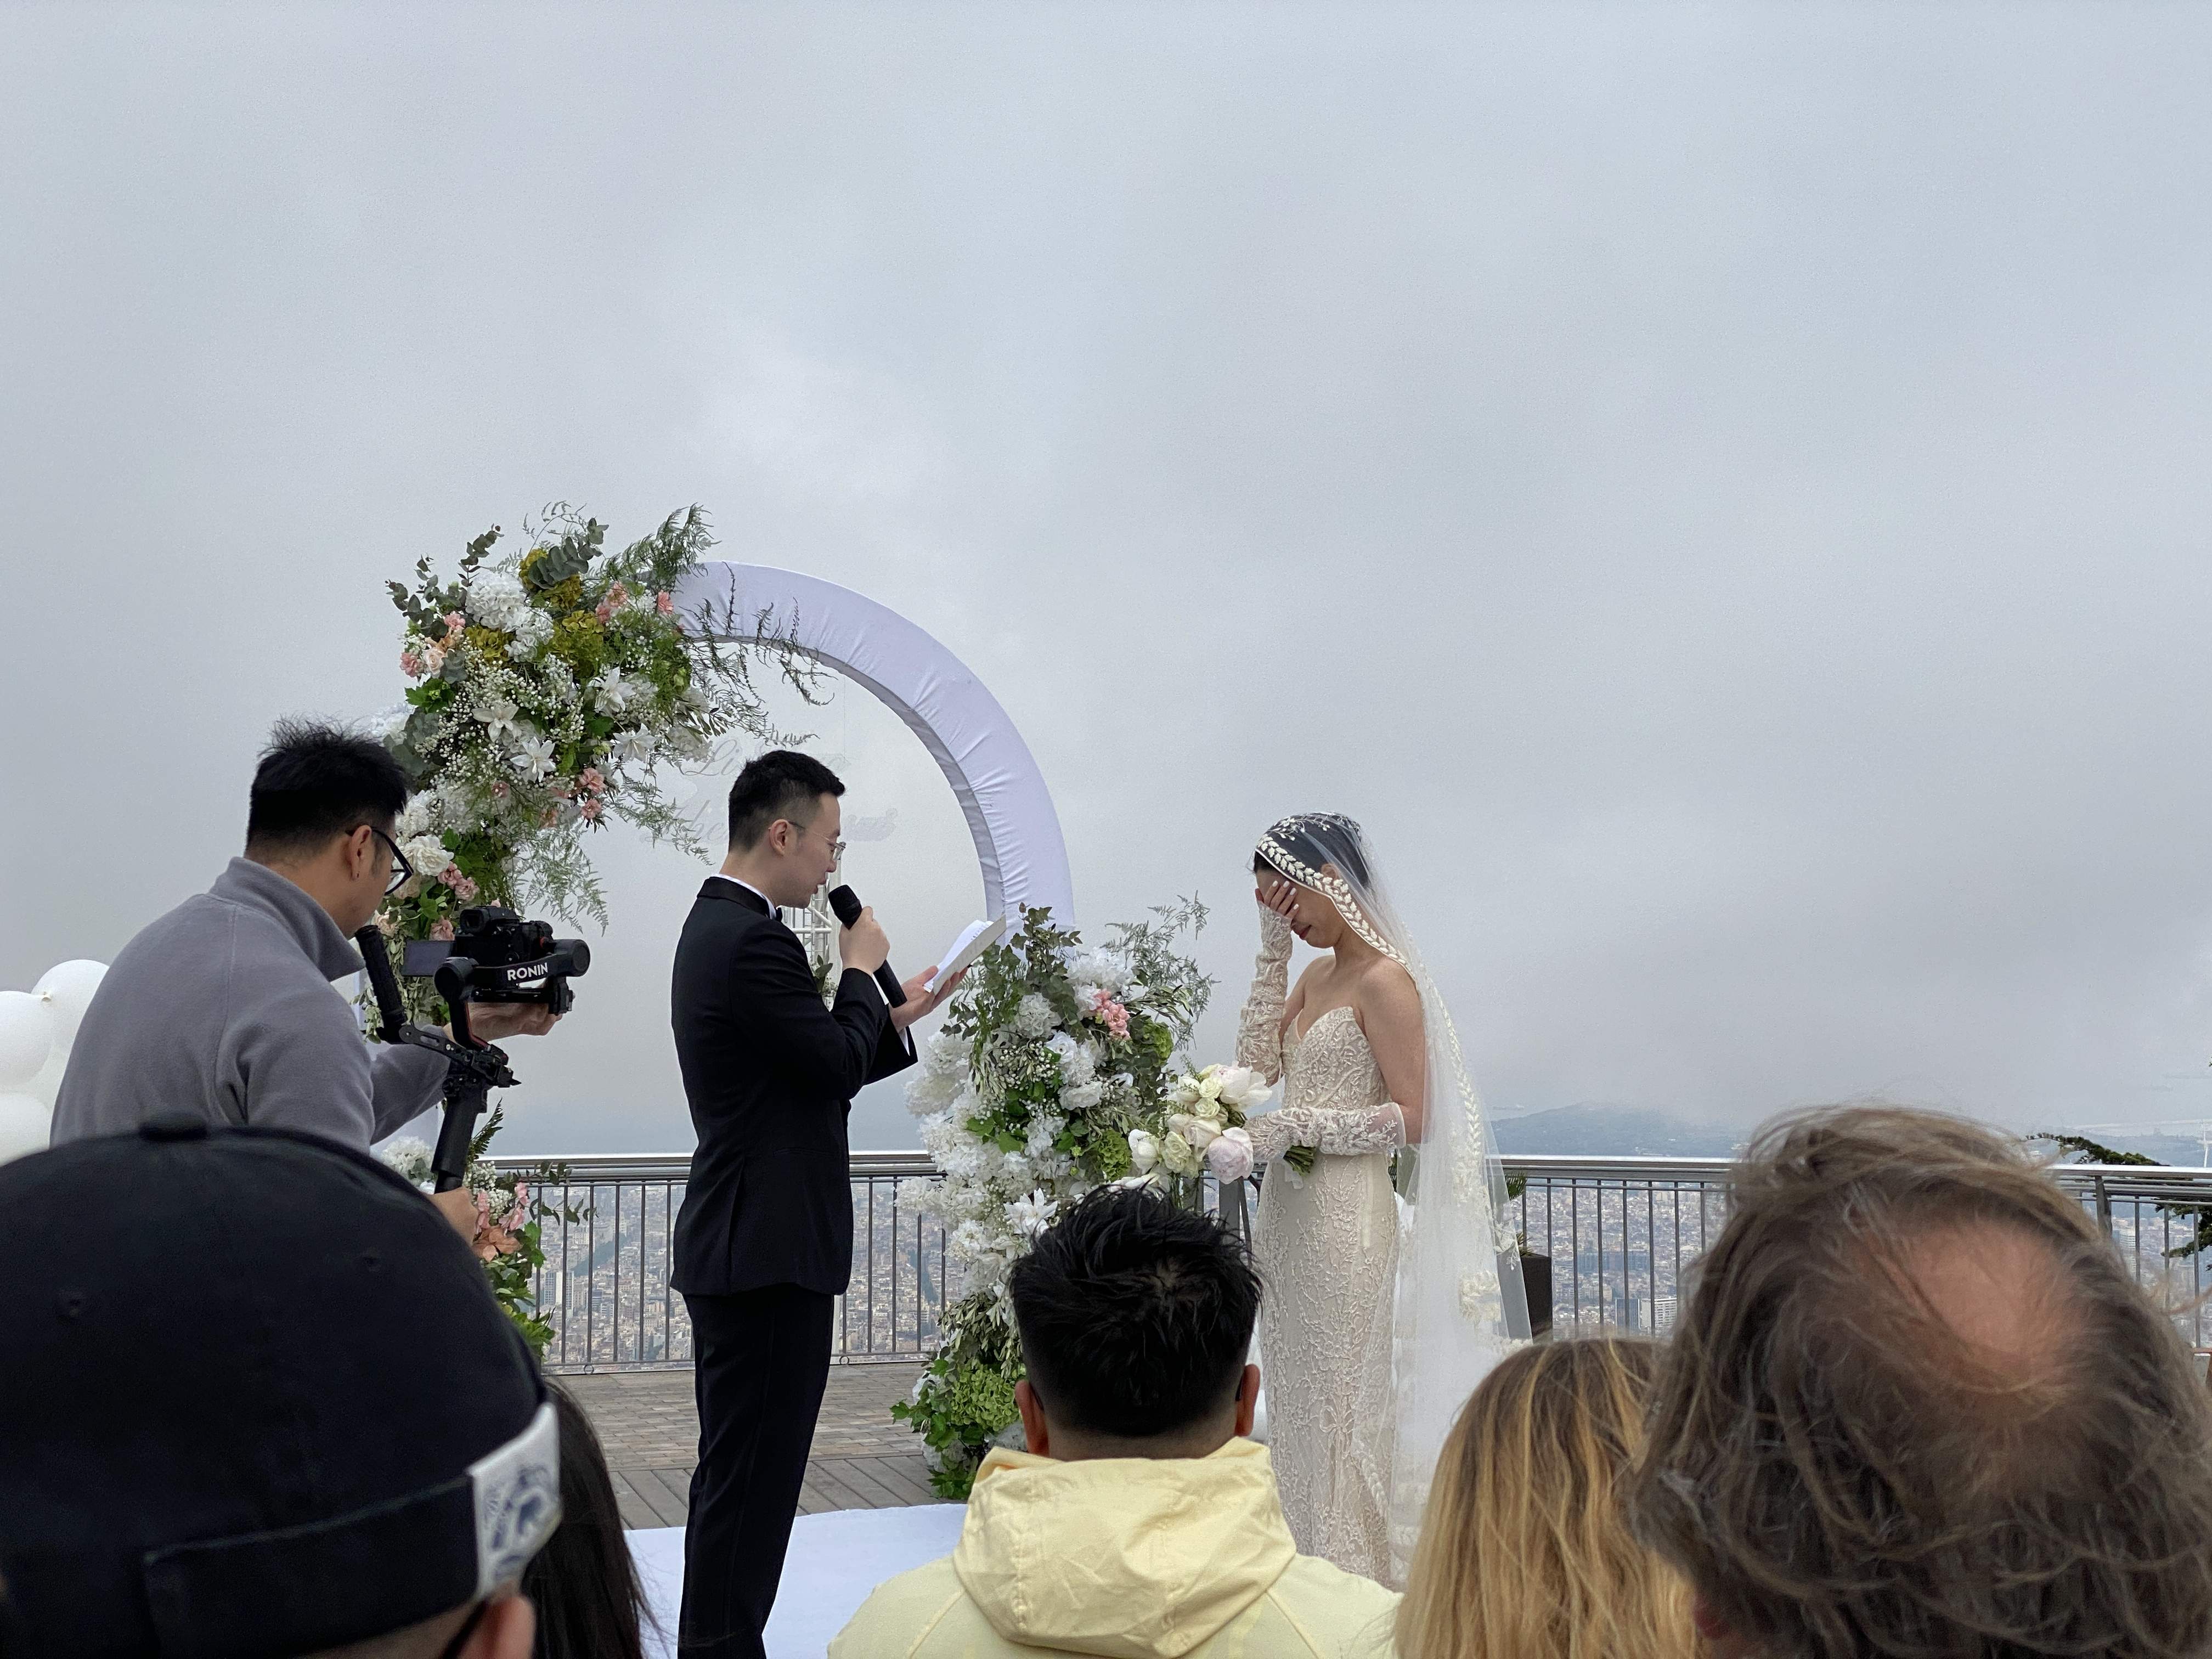 Una pareja china se casa en el Tibidabo con desconocidos de invitados